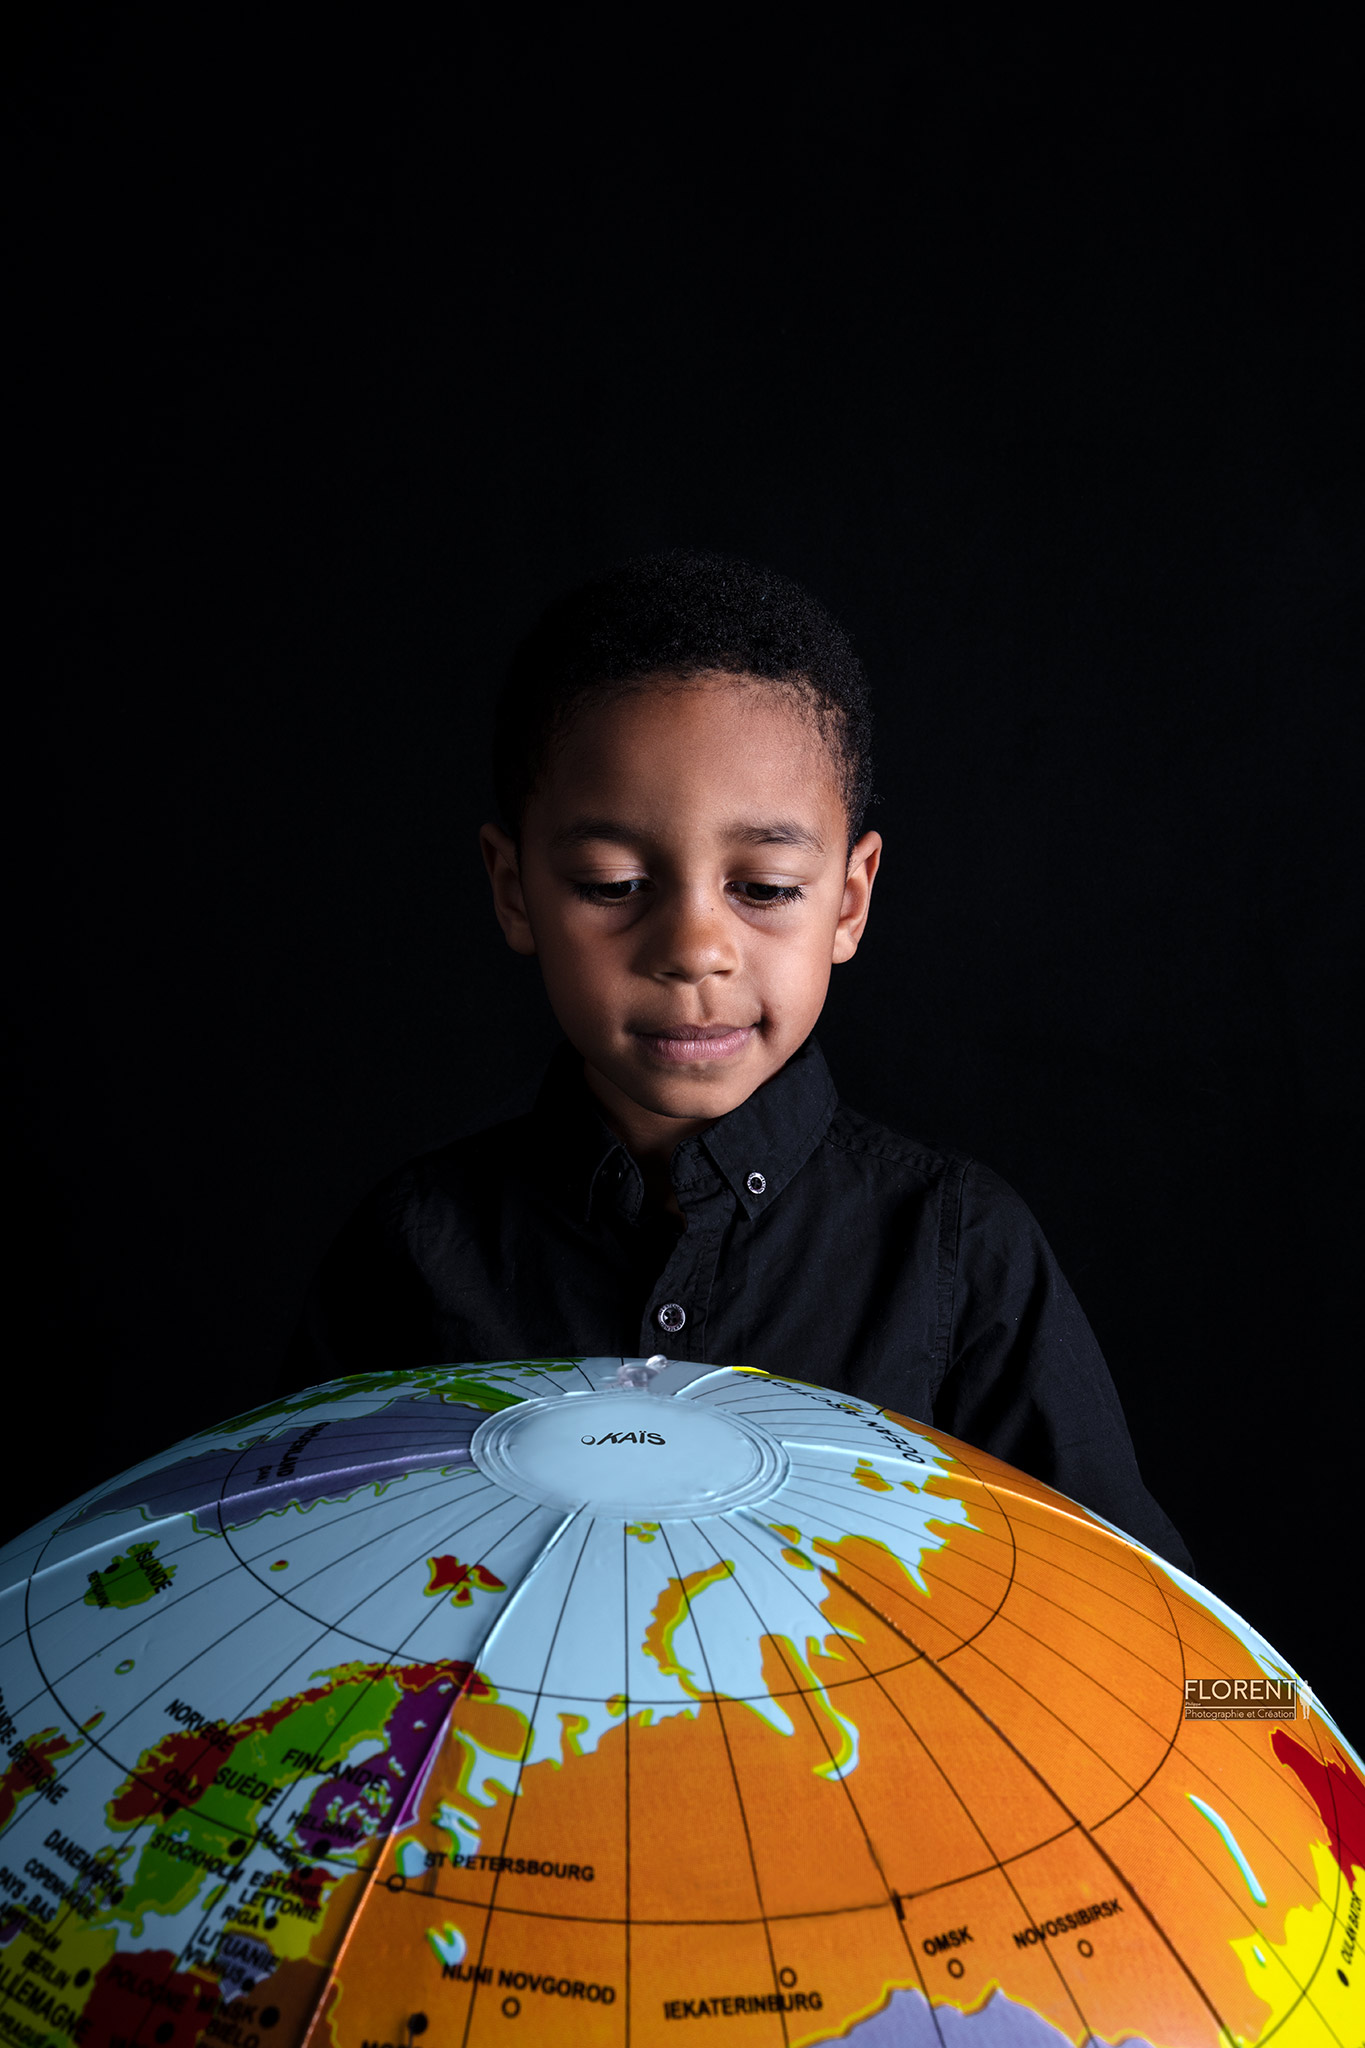 photographe enfant avec pour thème la planète avec ce jeune garçon qui regarde son ballon mappemonde studio Florent Boulogne sur mer